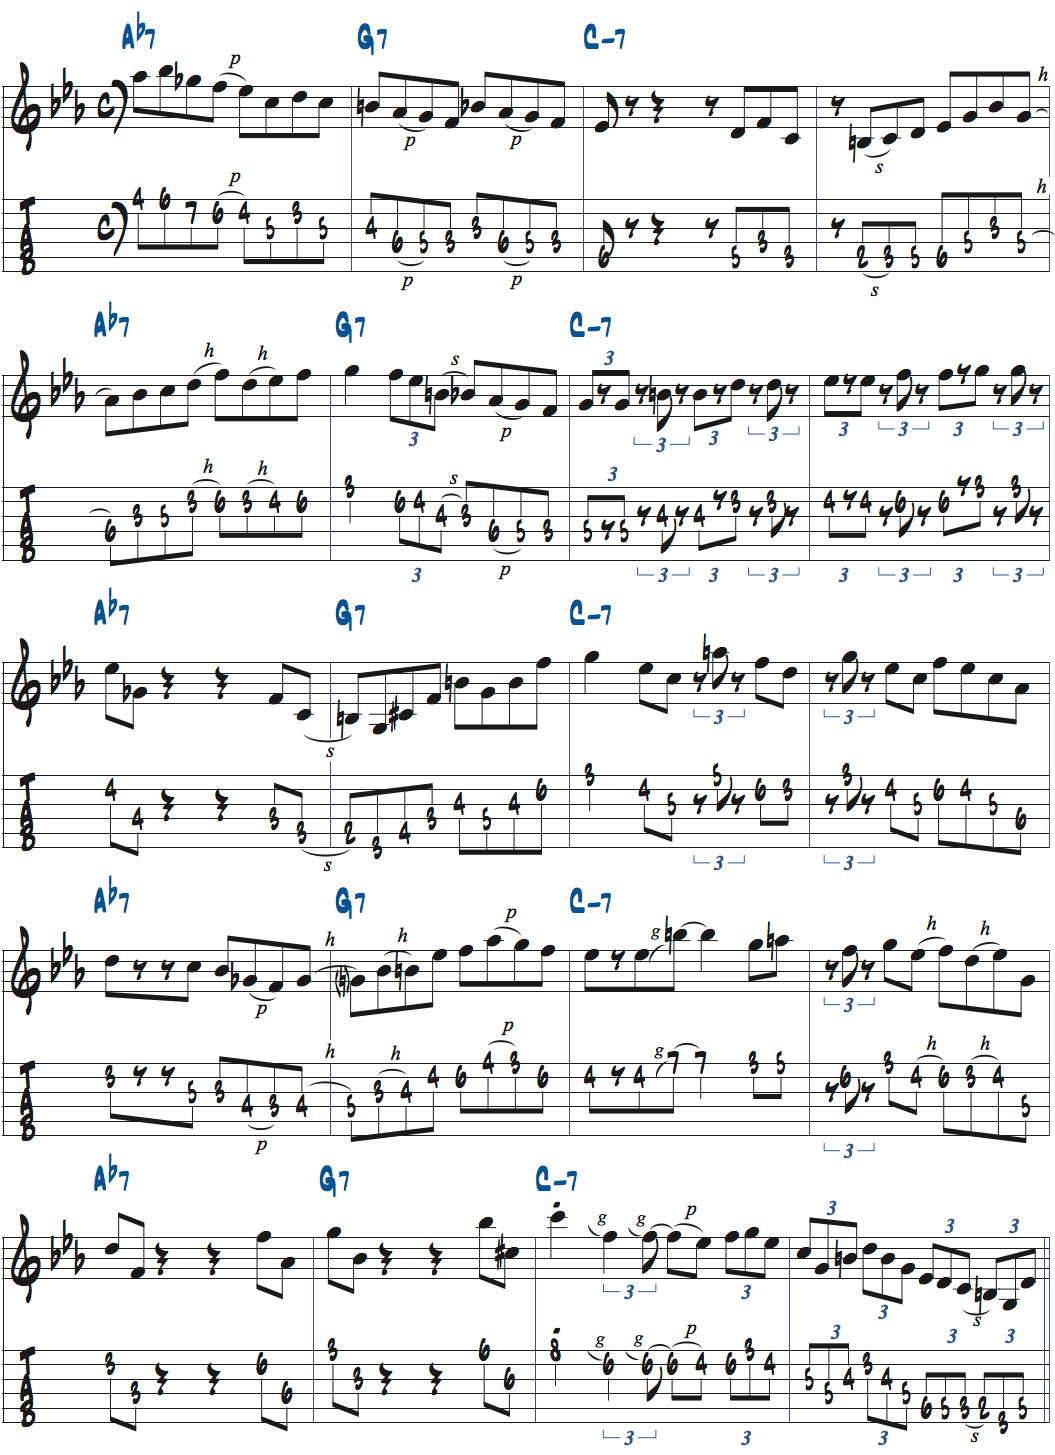 Ab7-G7-Cm7でのアドリブ例楽譜